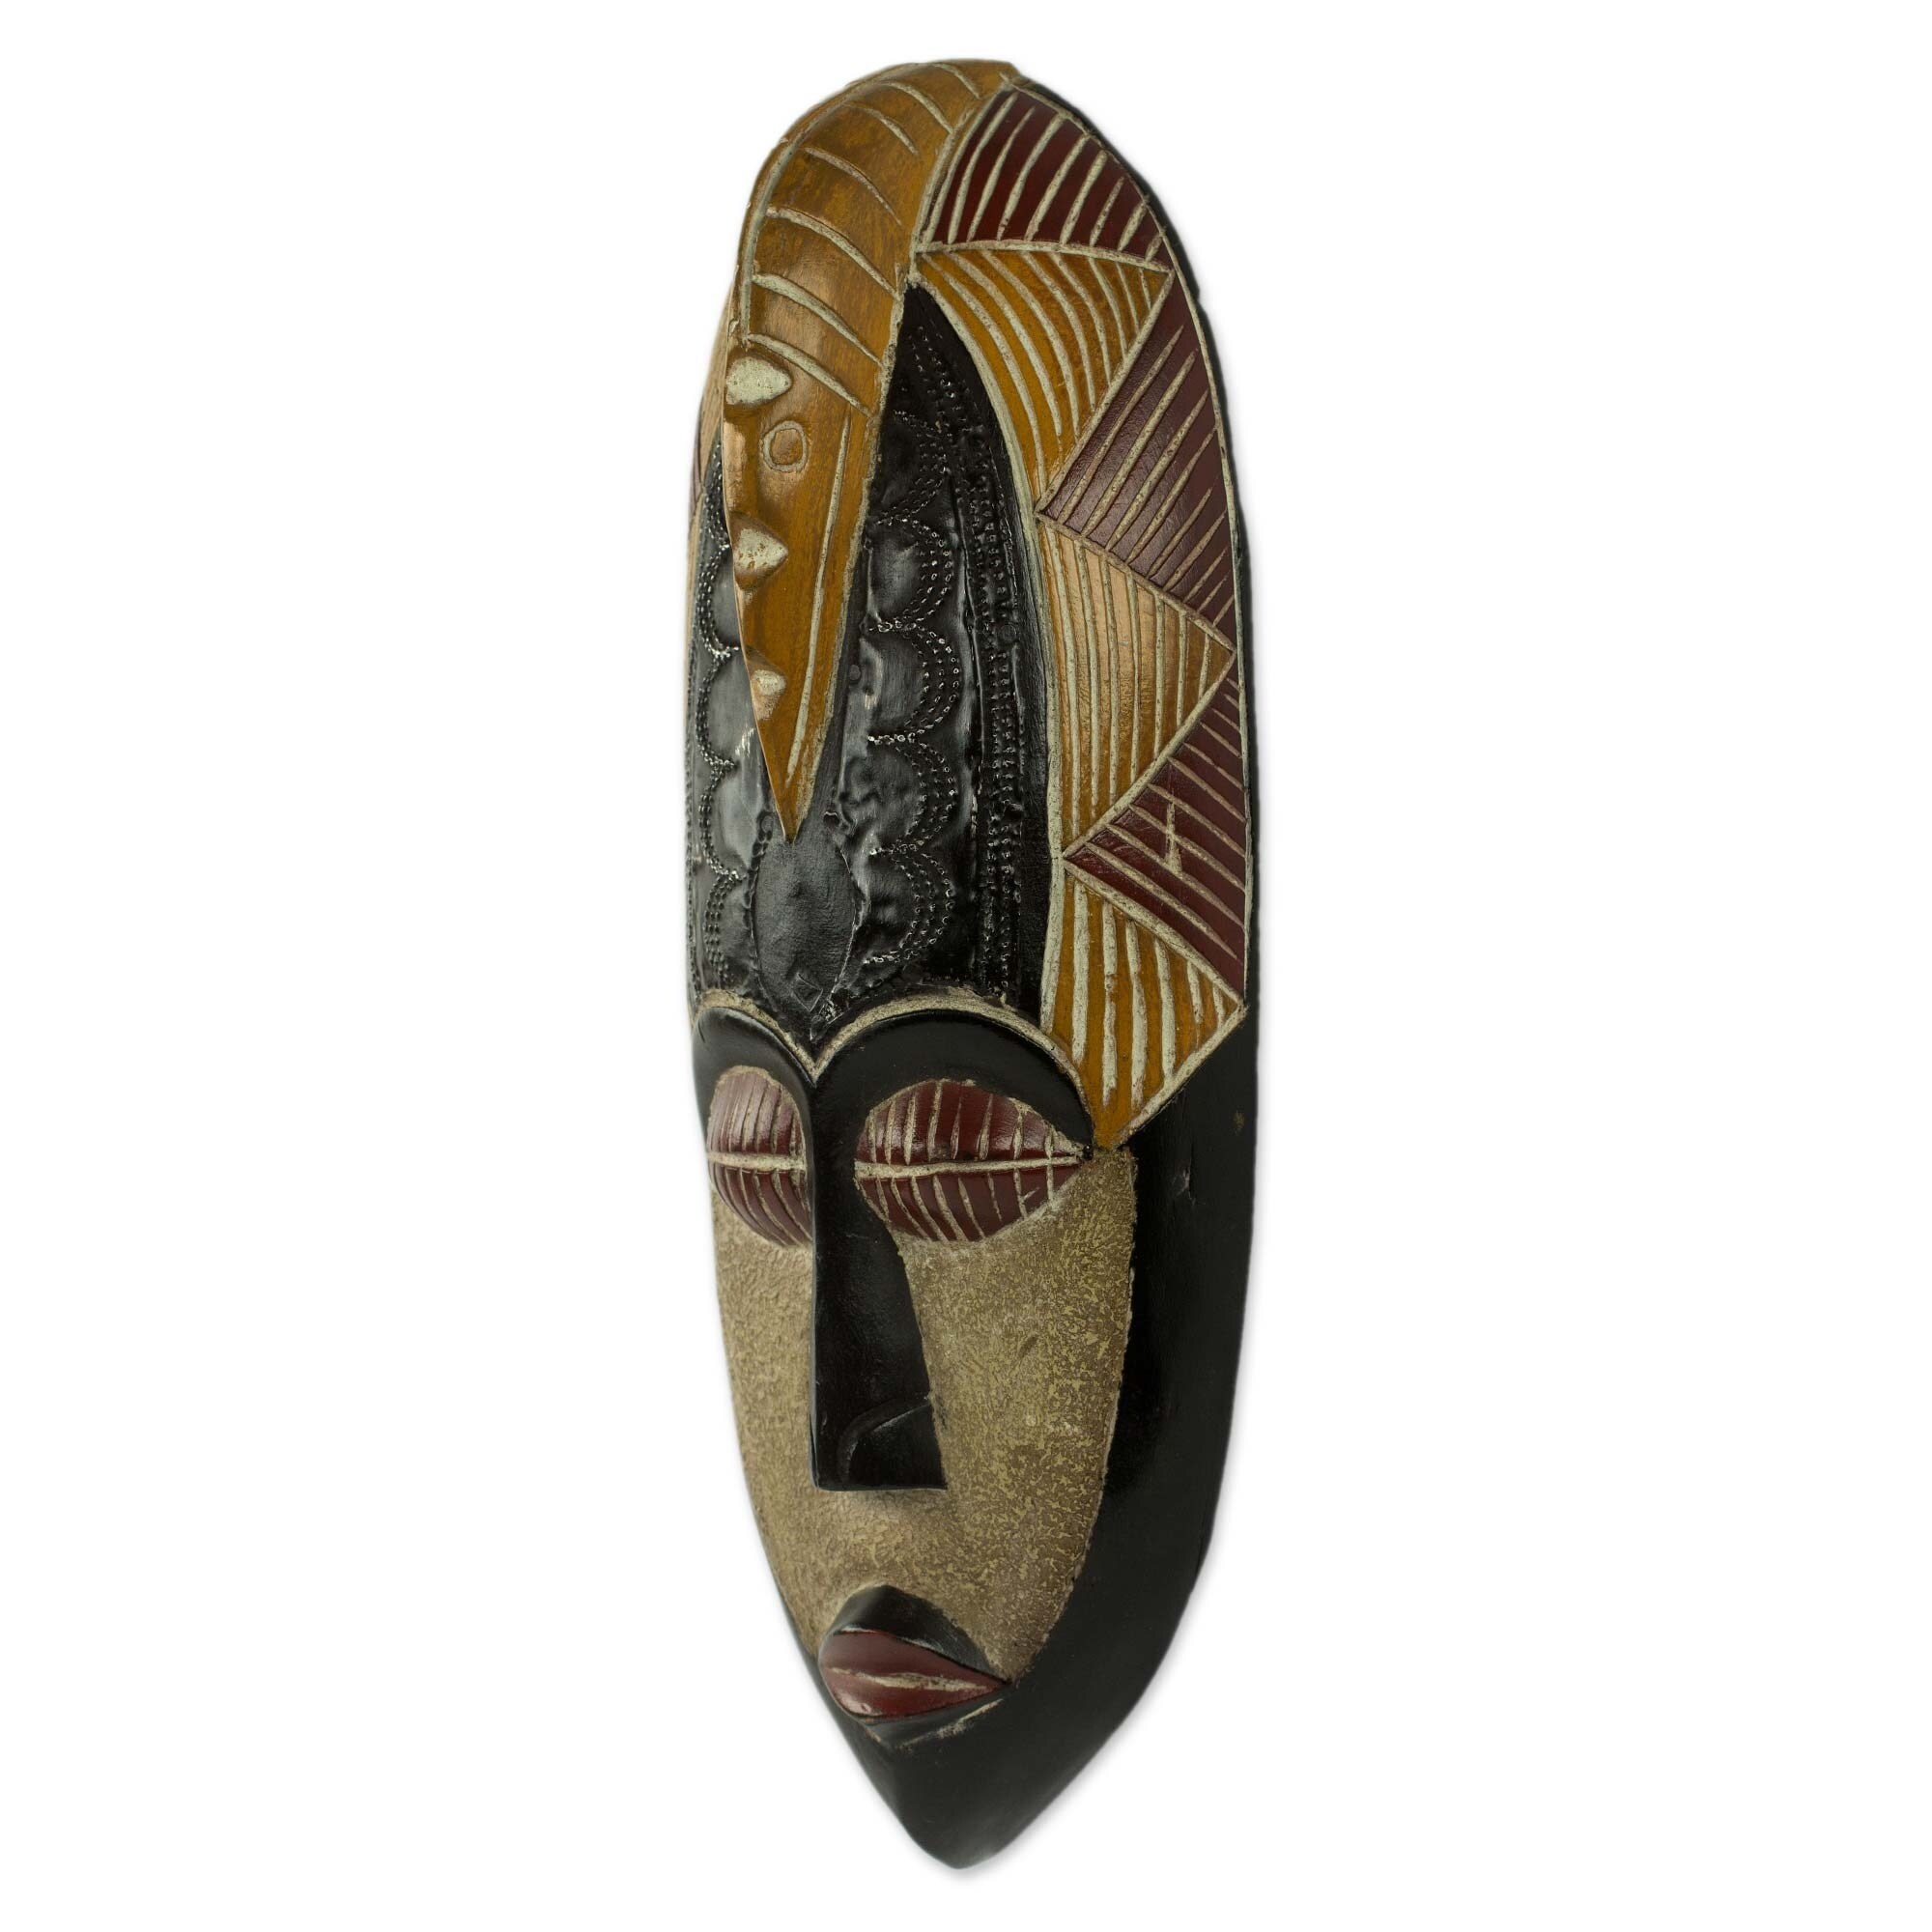 Handmade Herjole African Wood Mask (Ghana) - 15.25" H x 6" W x 3.1" D